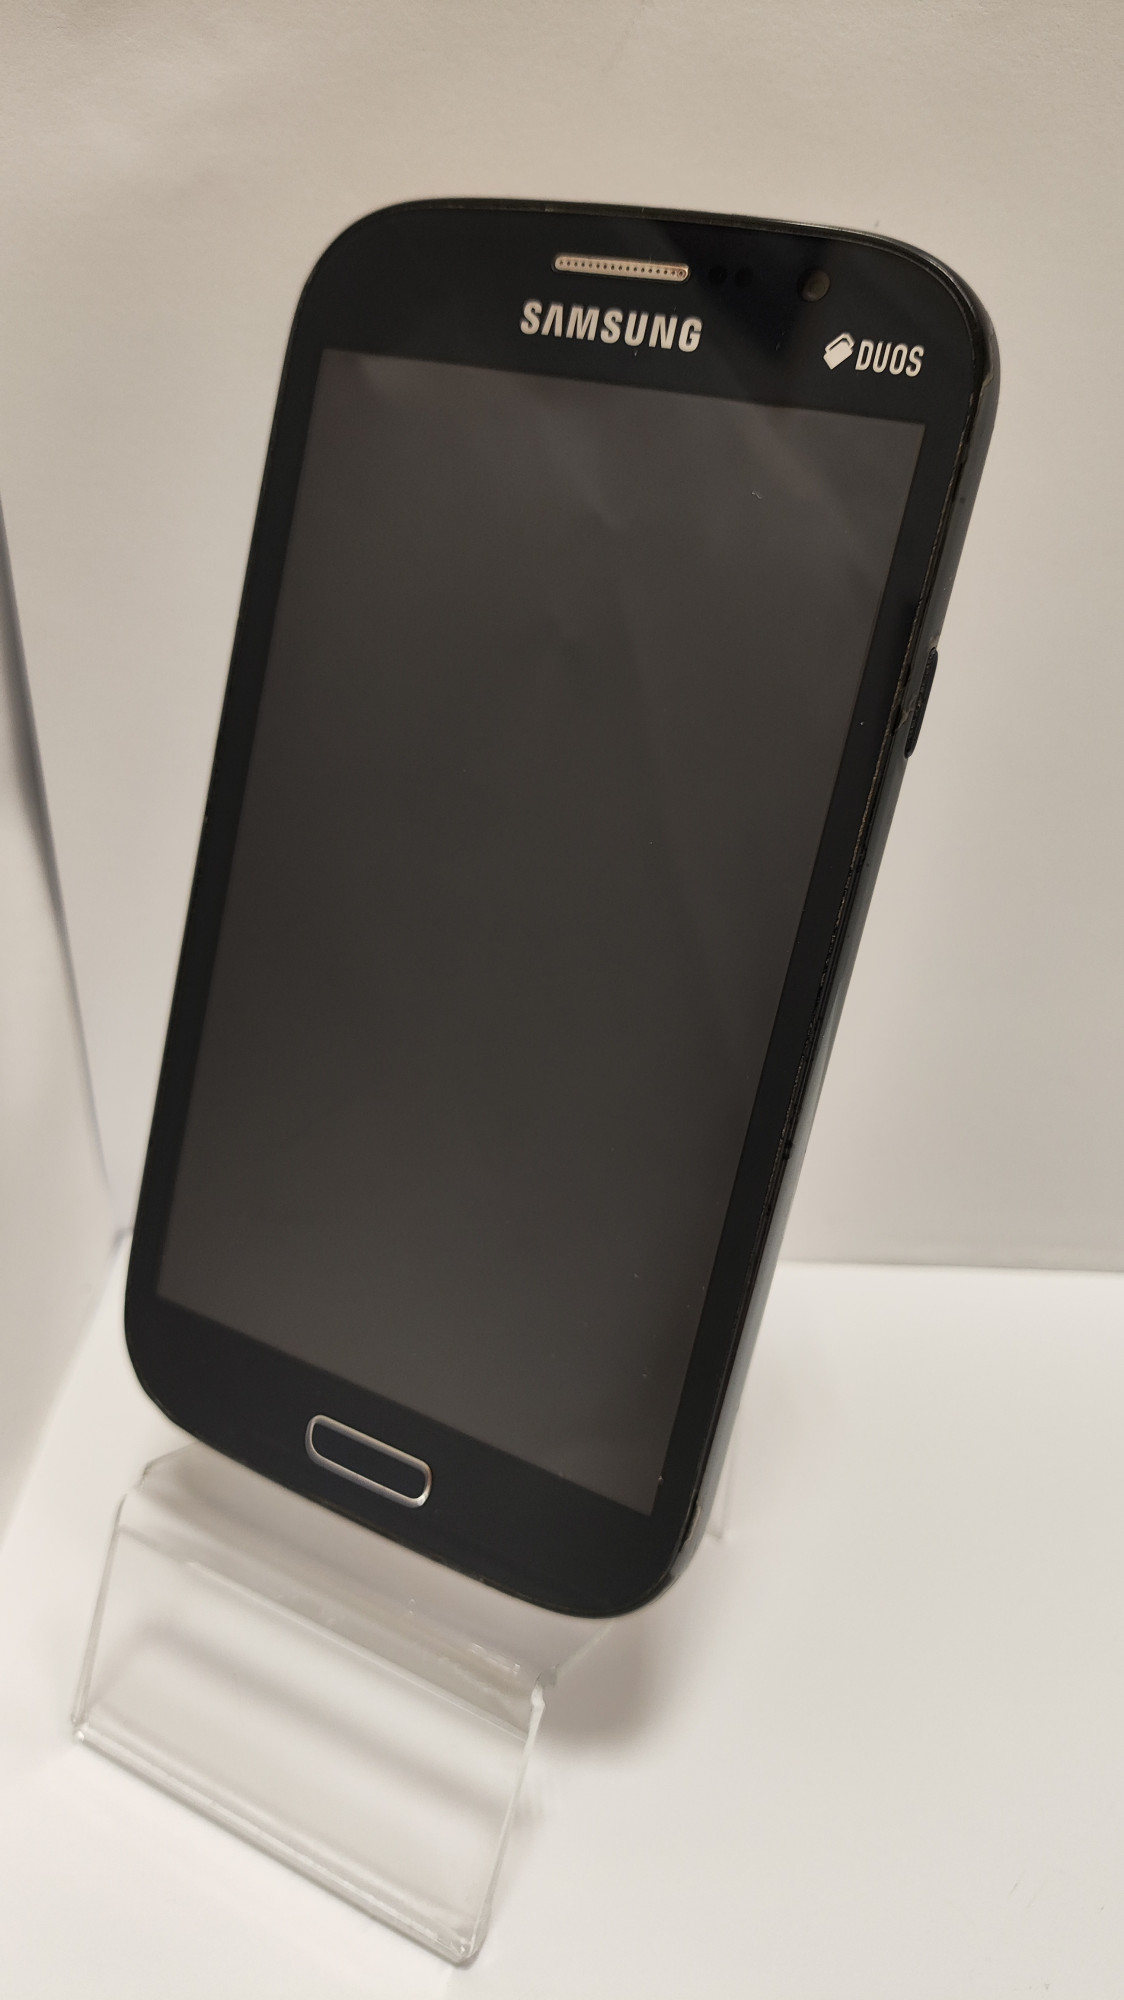 Samsung Galaxy Grand Duos Elegant (GT-I9082) 1/8Gb 3